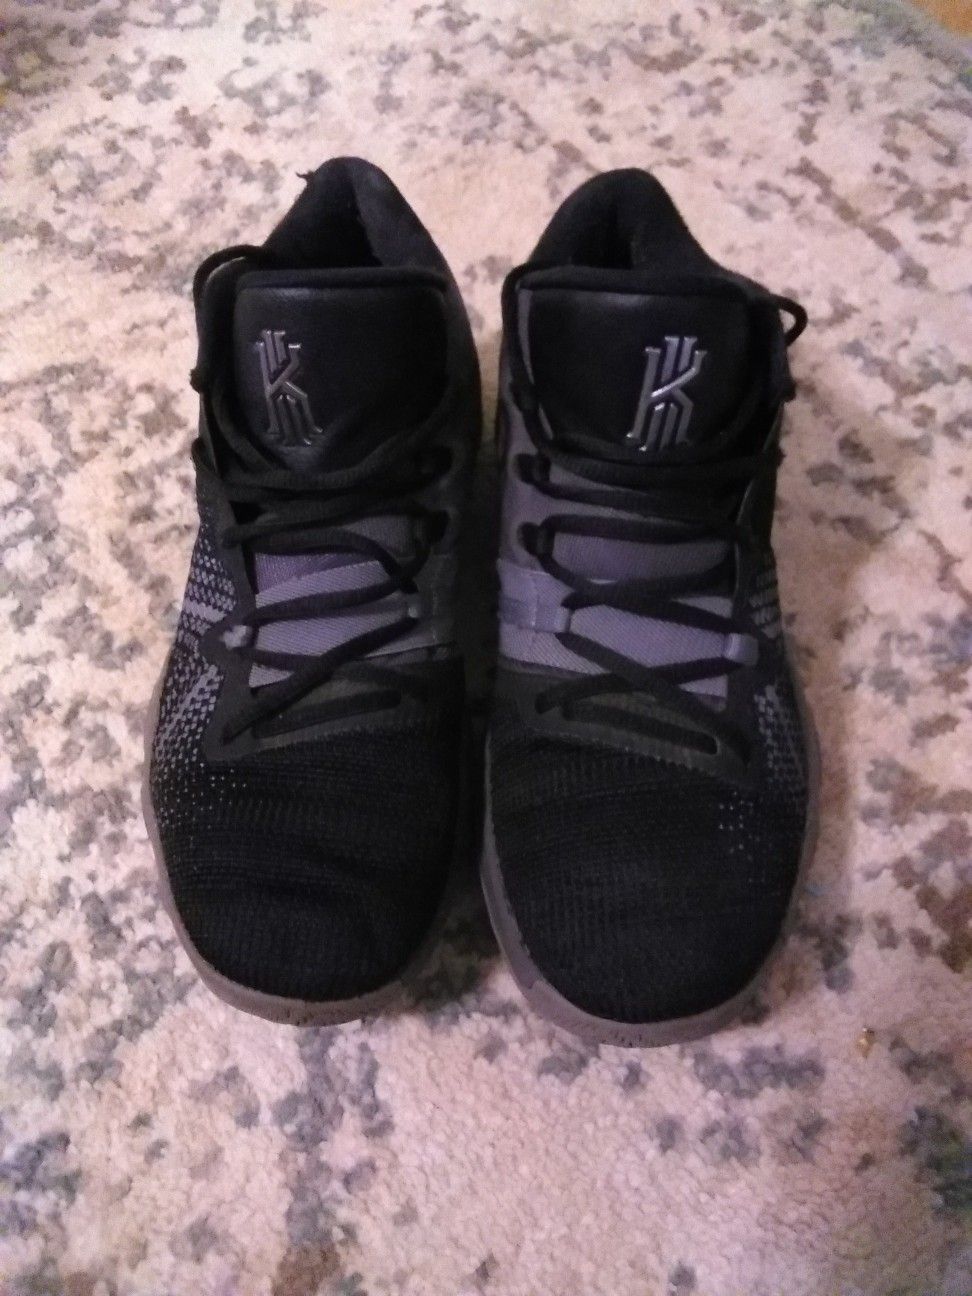 Nike Kyrie Flytrap Black/ Thunder Grey (Men's) 9 asking $20